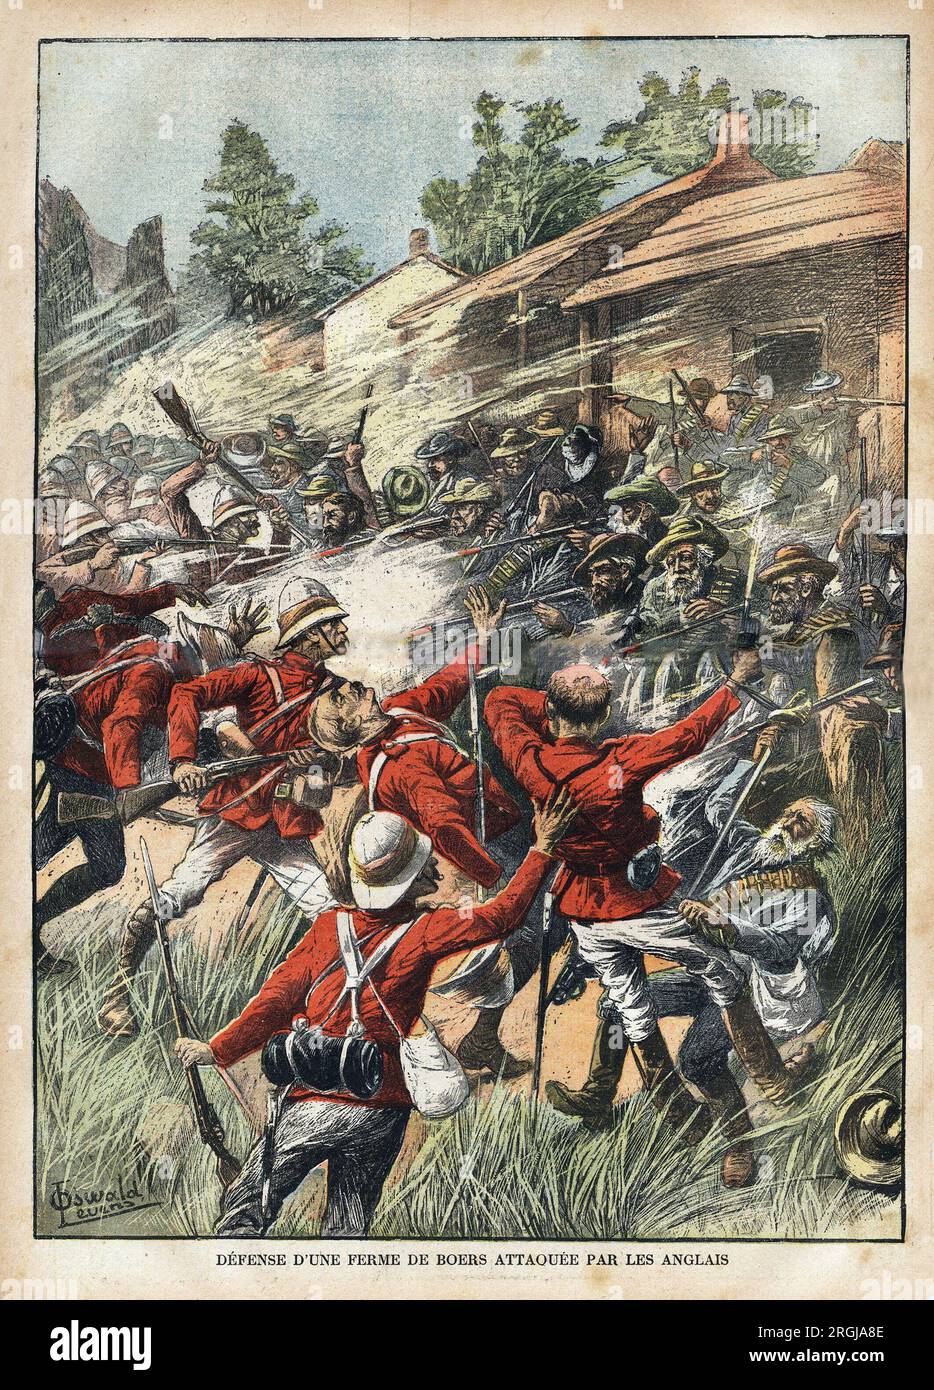 La Defense d'une ferme de Boers attaquee par les troupes anglaises, Pendant la guerre au Transvaal (Afrique du Sud). Gravure in 'Le pelerin' 18021900. Stockfoto